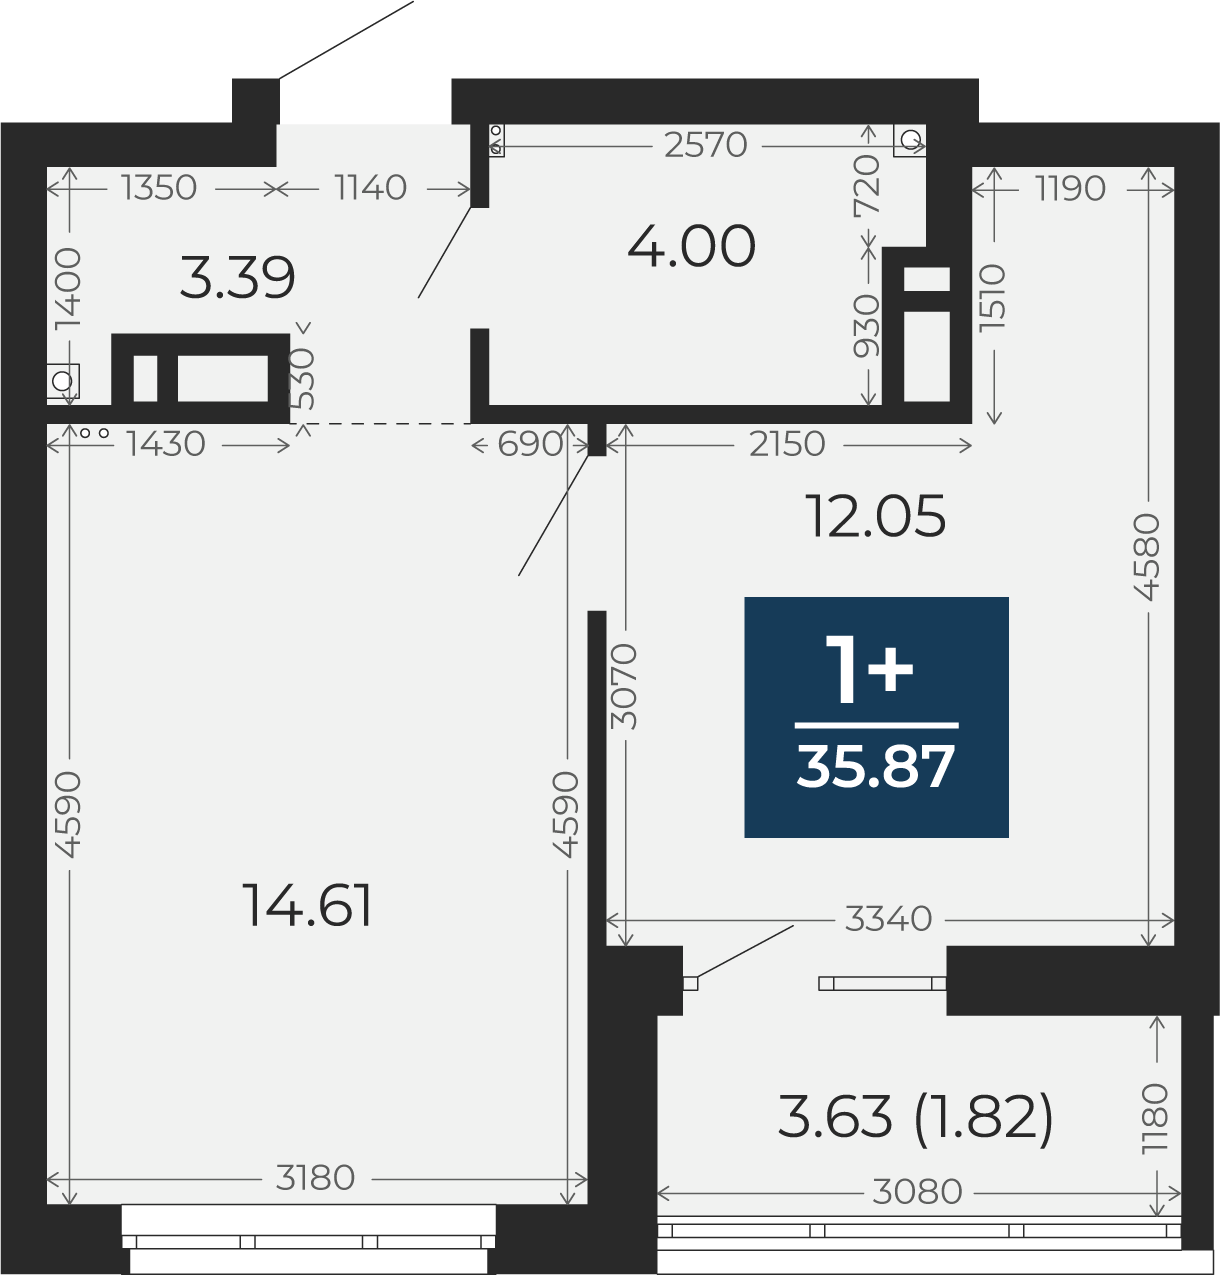 Квартира № 412, 1-комнатная, 35.87 кв. м, 12 этаж